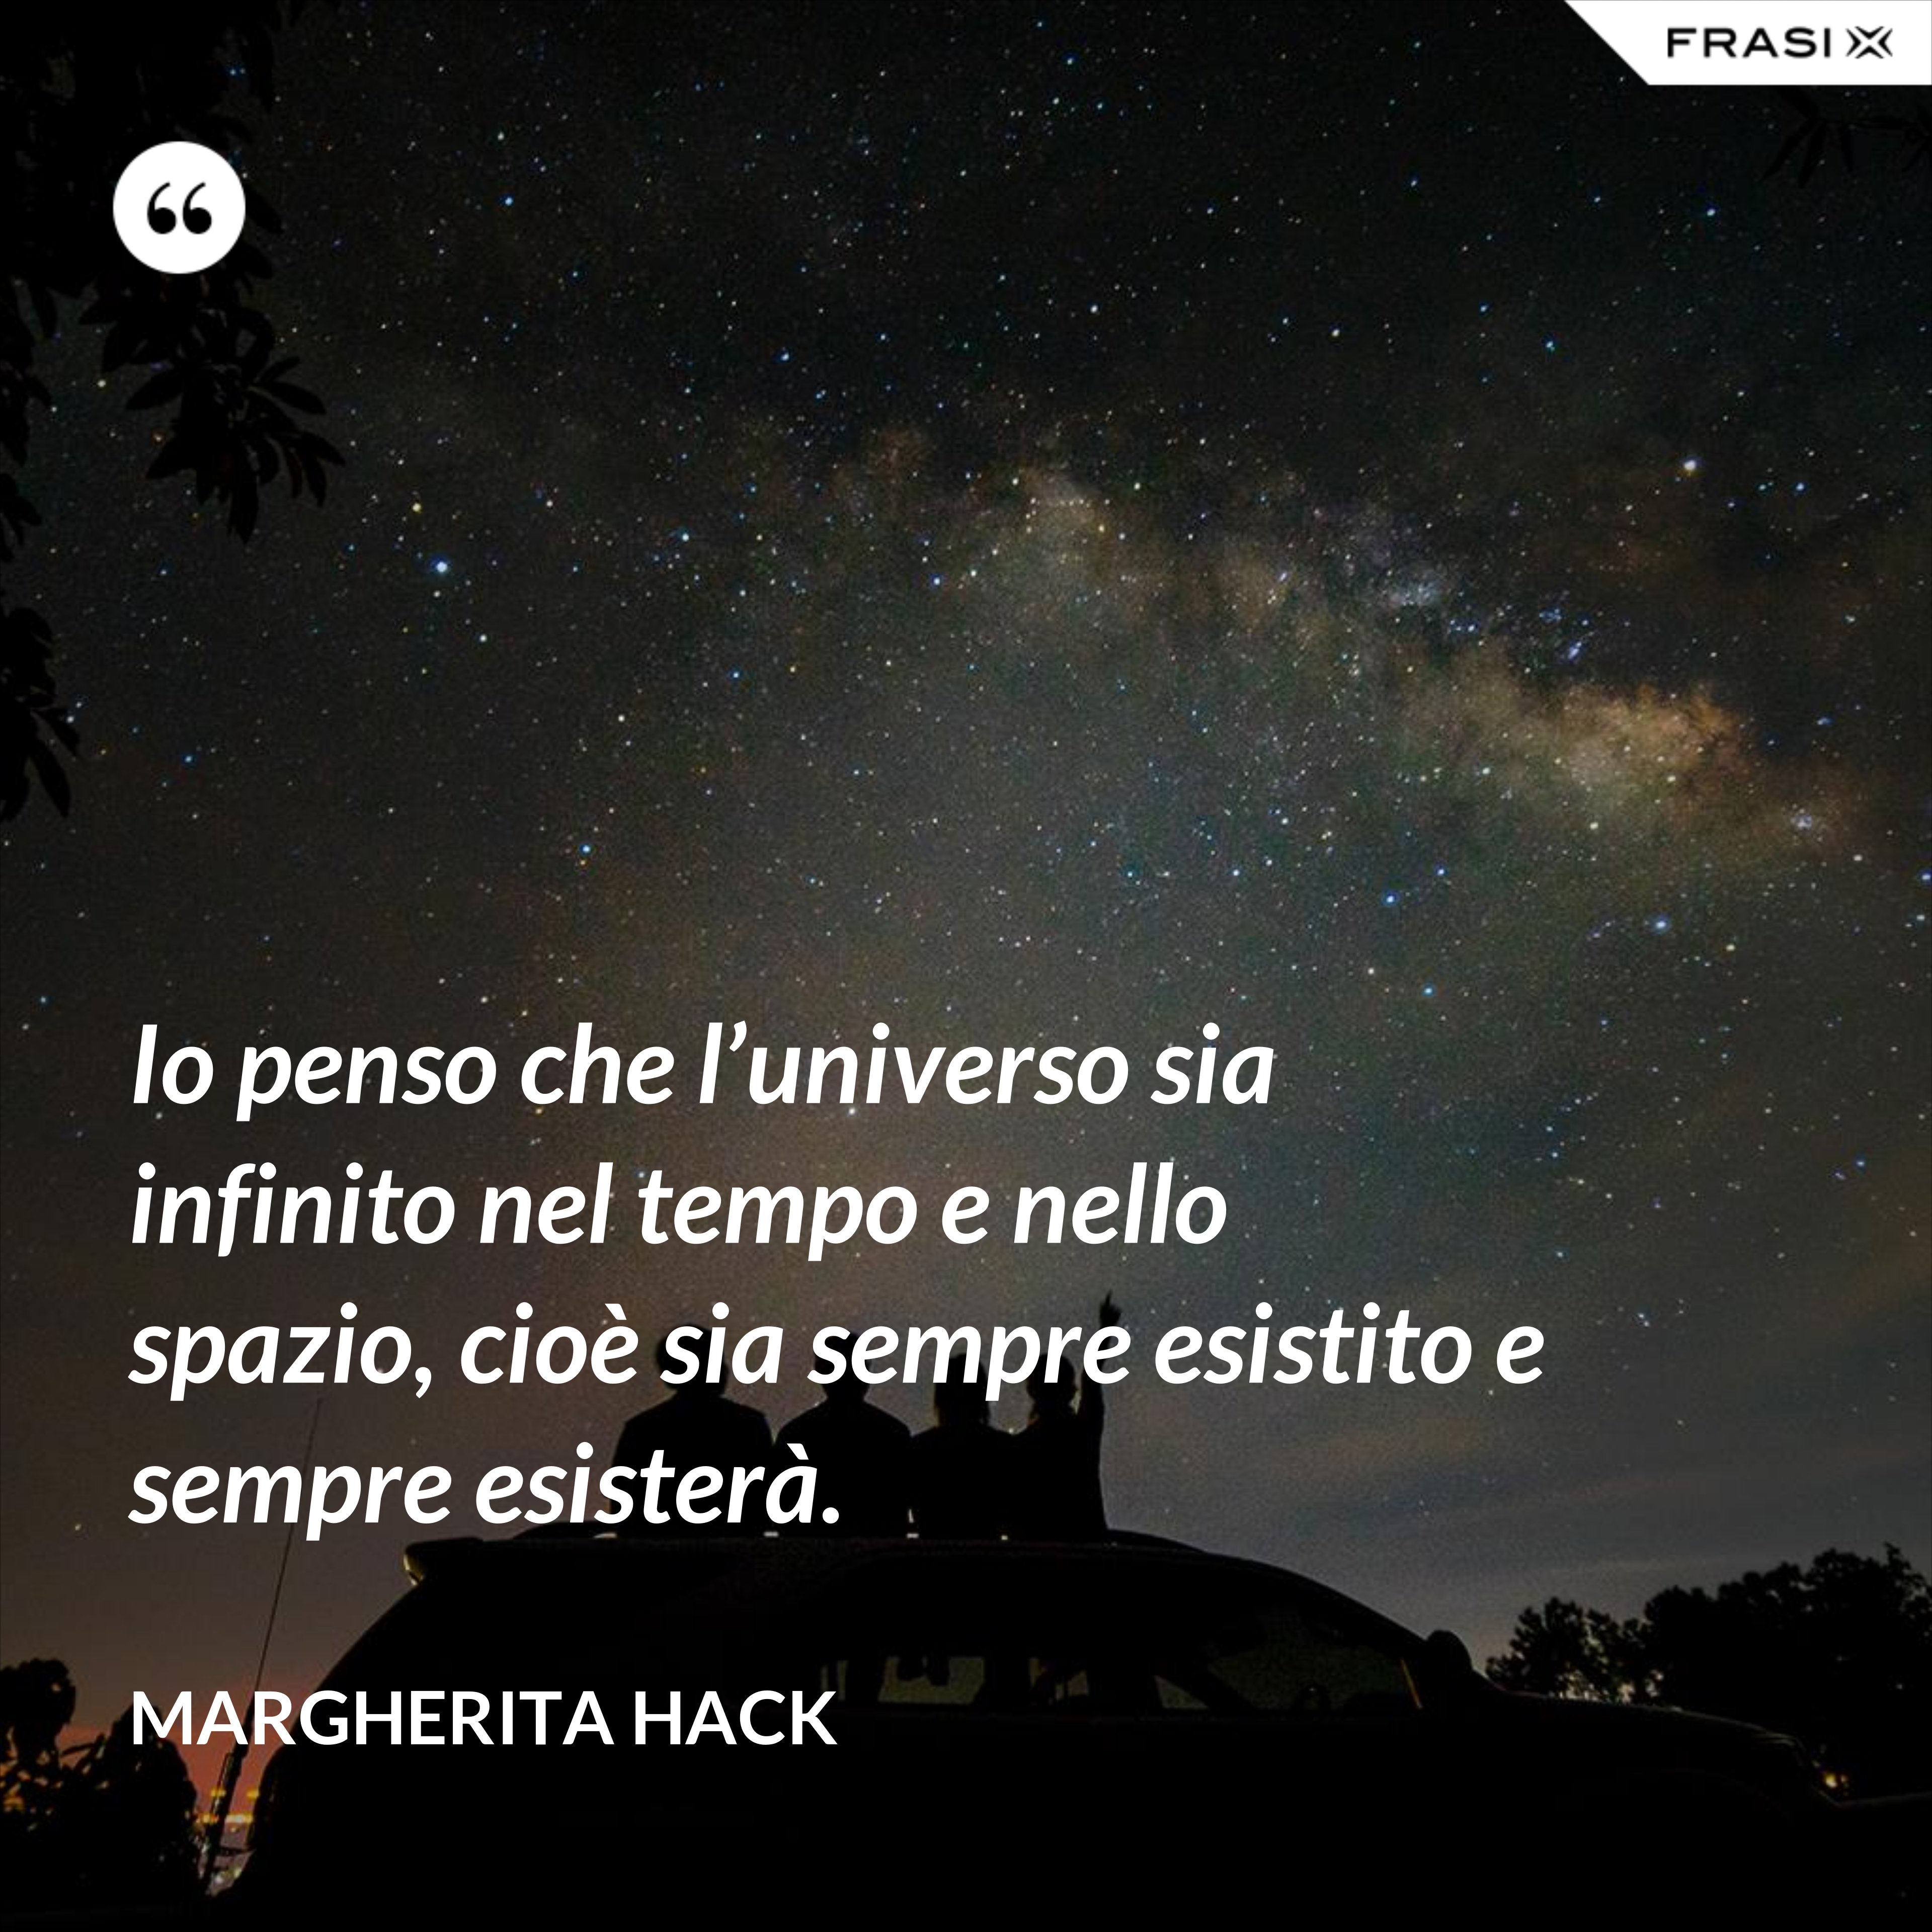 Io penso che l’universo sia infinito nel tempo e nello spazio, cioè sia sempre esistito e sempre esisterà. - Margherita Hack